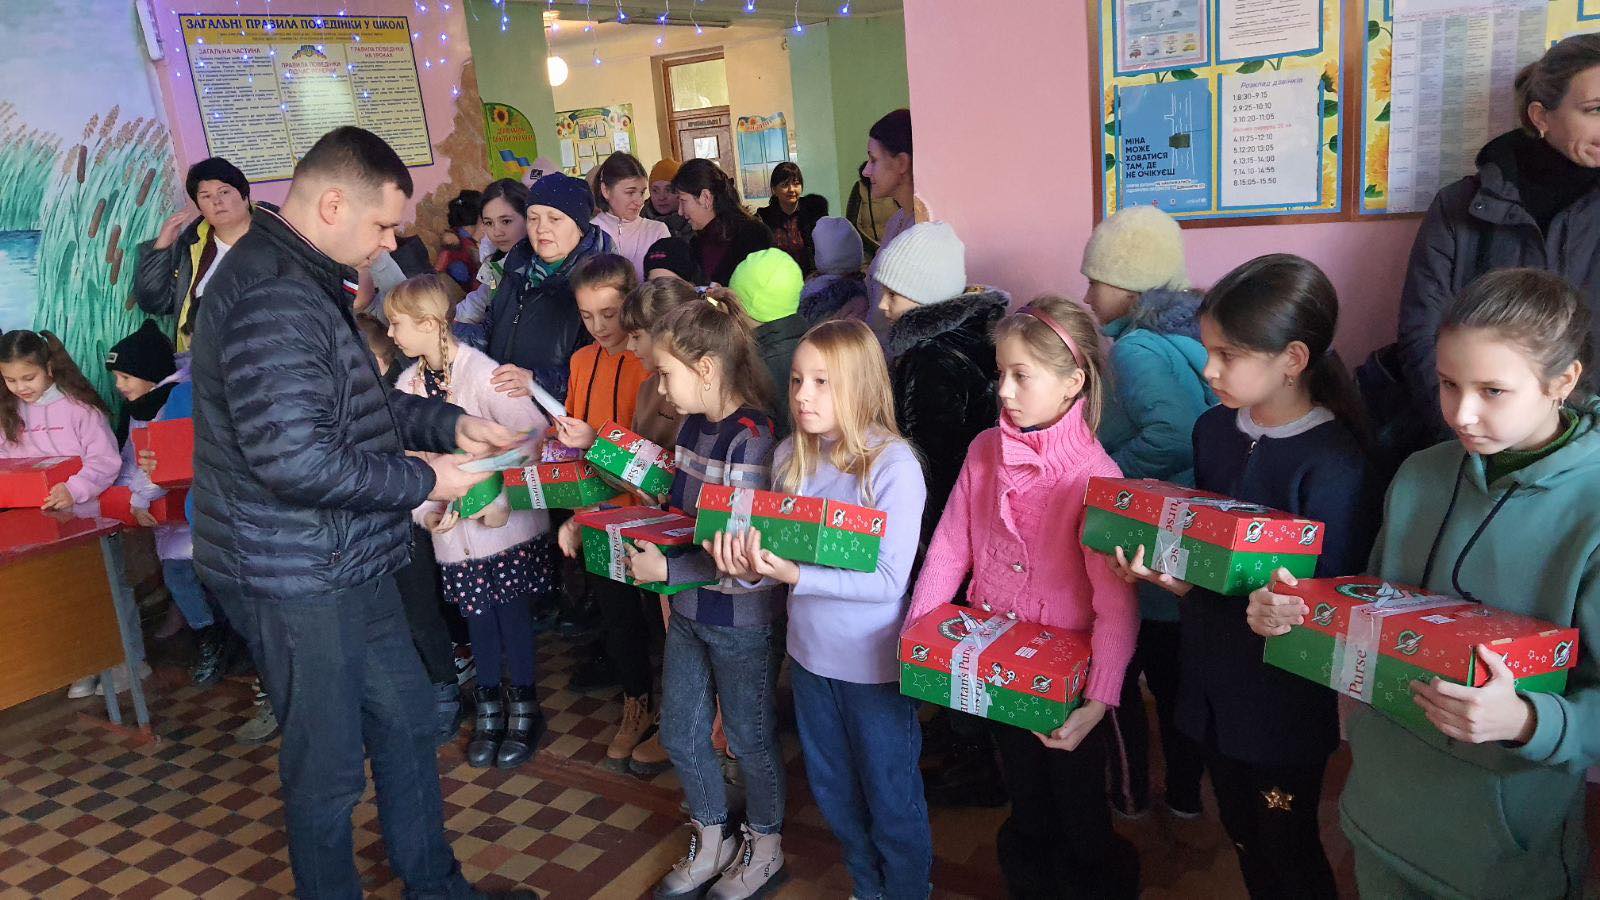 "Фонд Добра та Любові" Олександра Дубового порадував подарунками-сюрпризами до свят близько чотирьох тисяч дітей Бессарабії